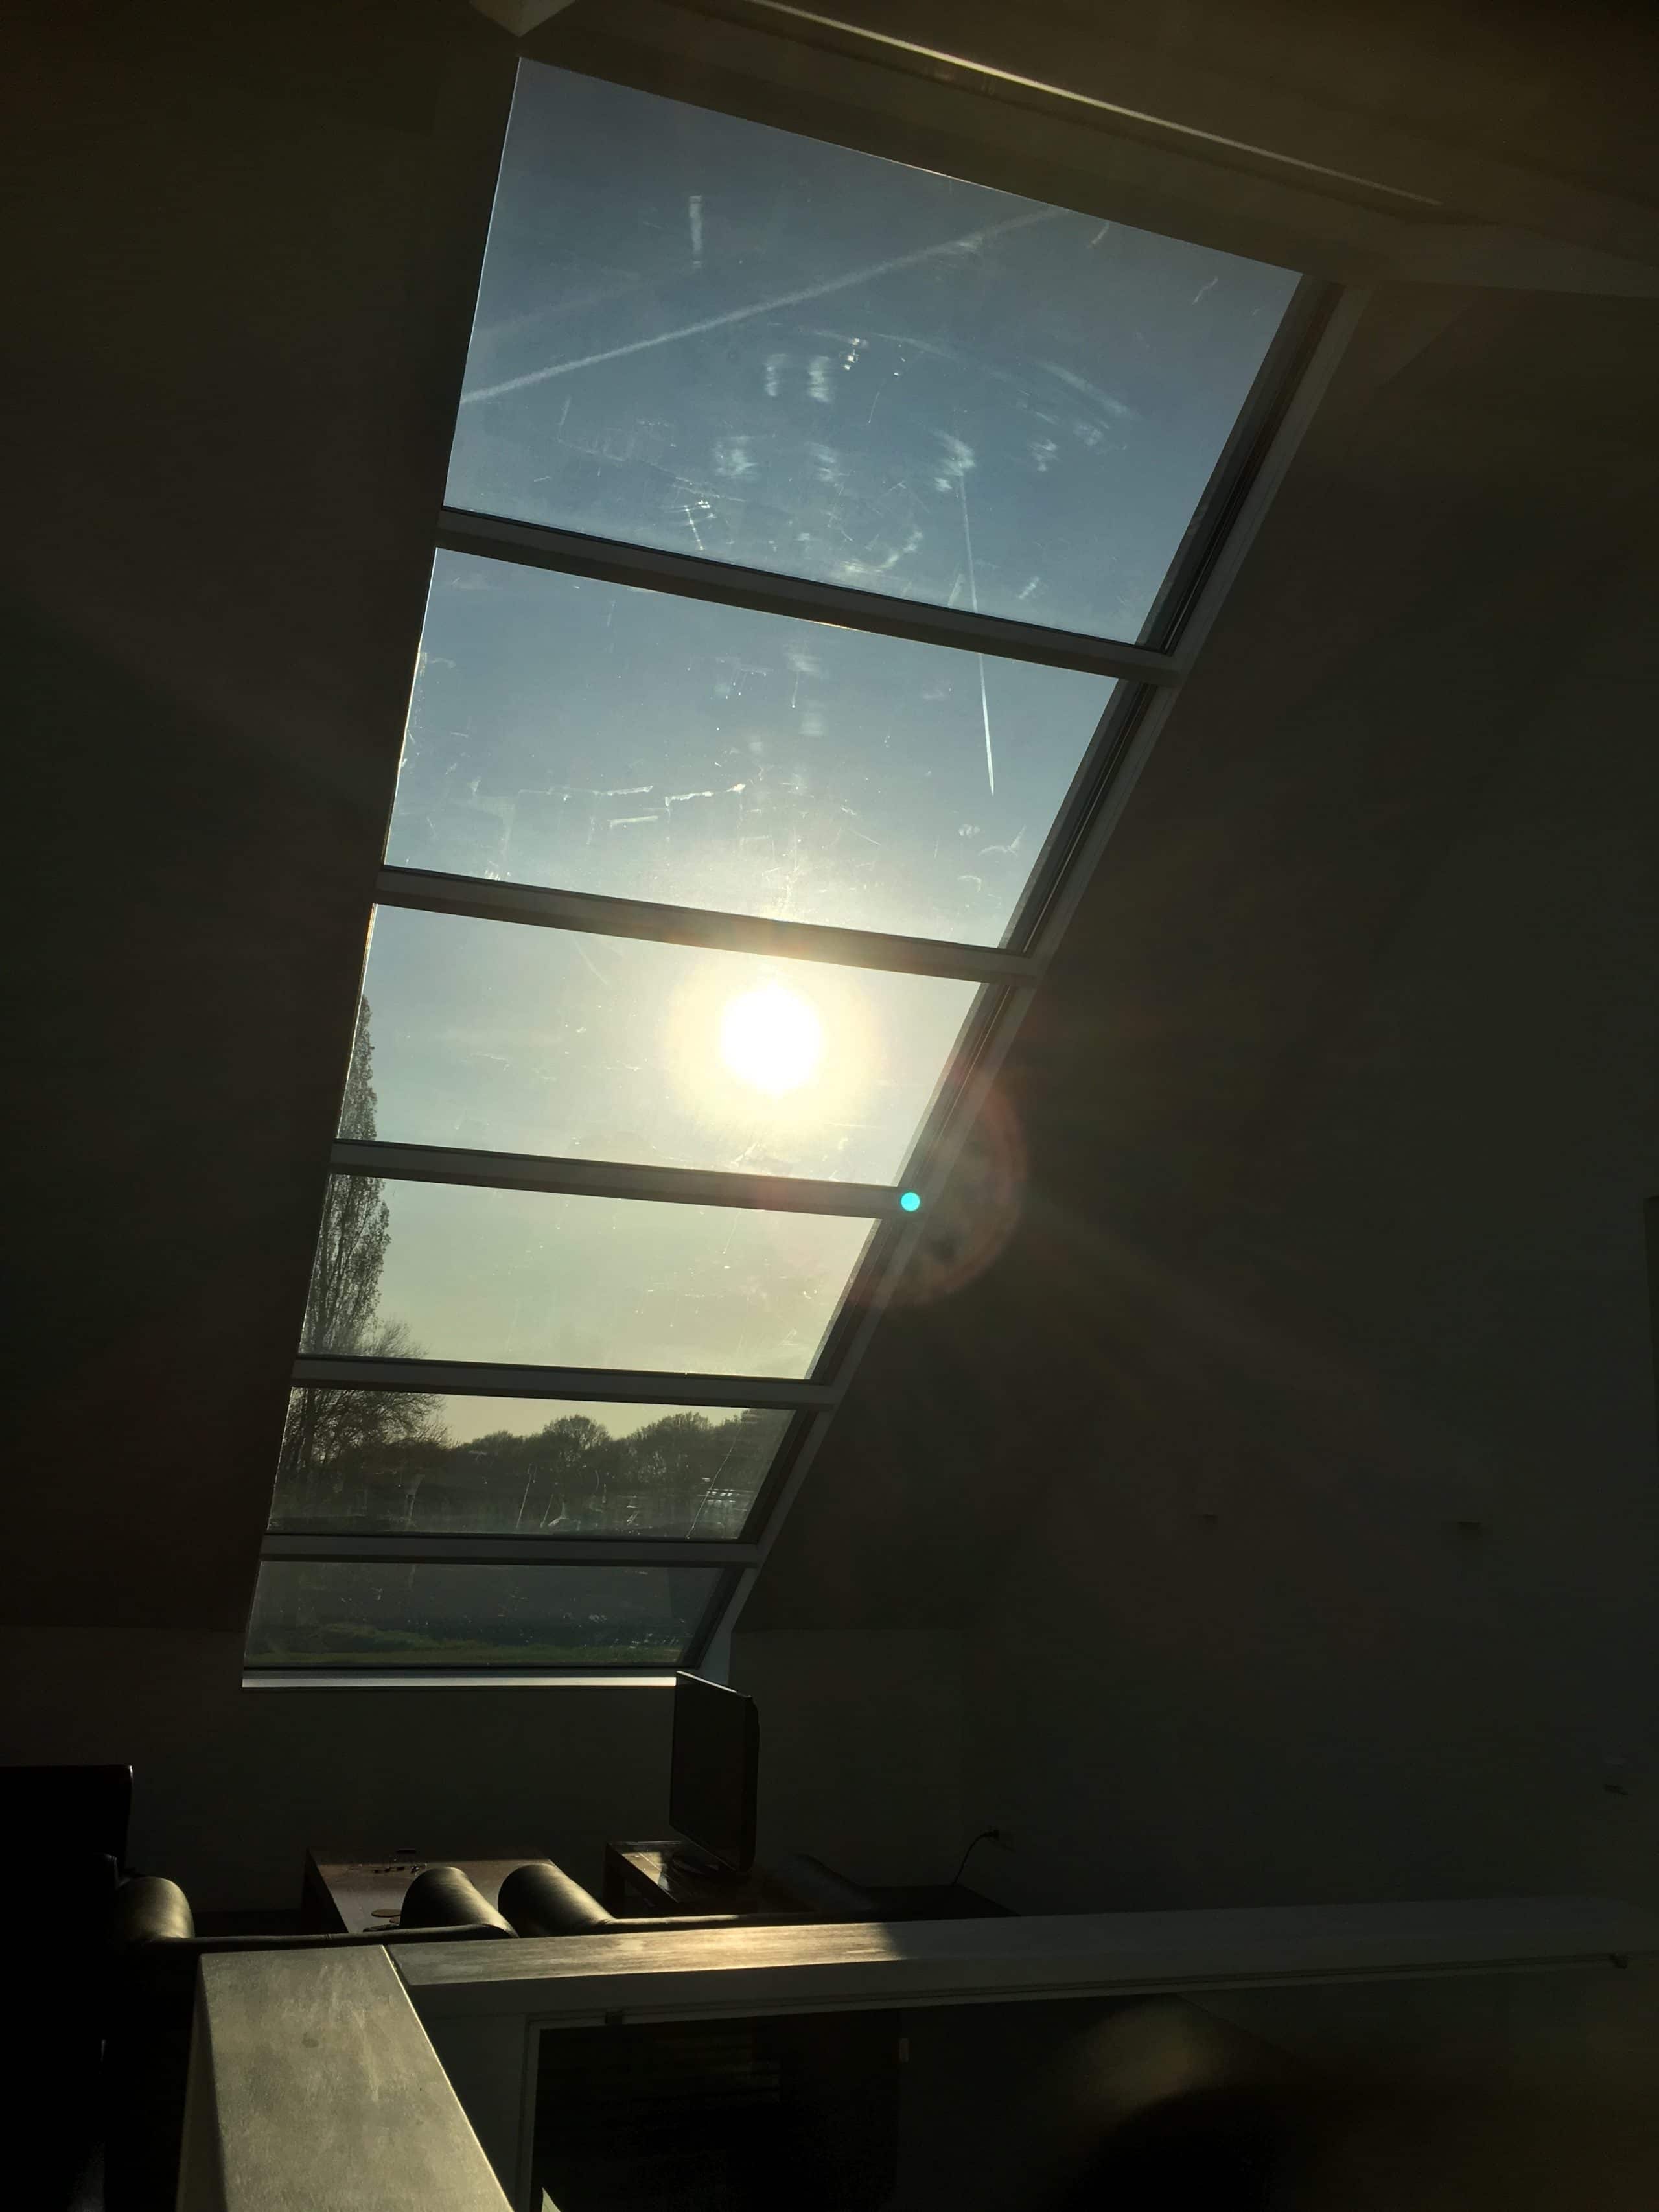 Glazen dak constructie voorzien van Sunblock Stainless Steel 15 teneinde de zonnewarmte buiten de woning te houden